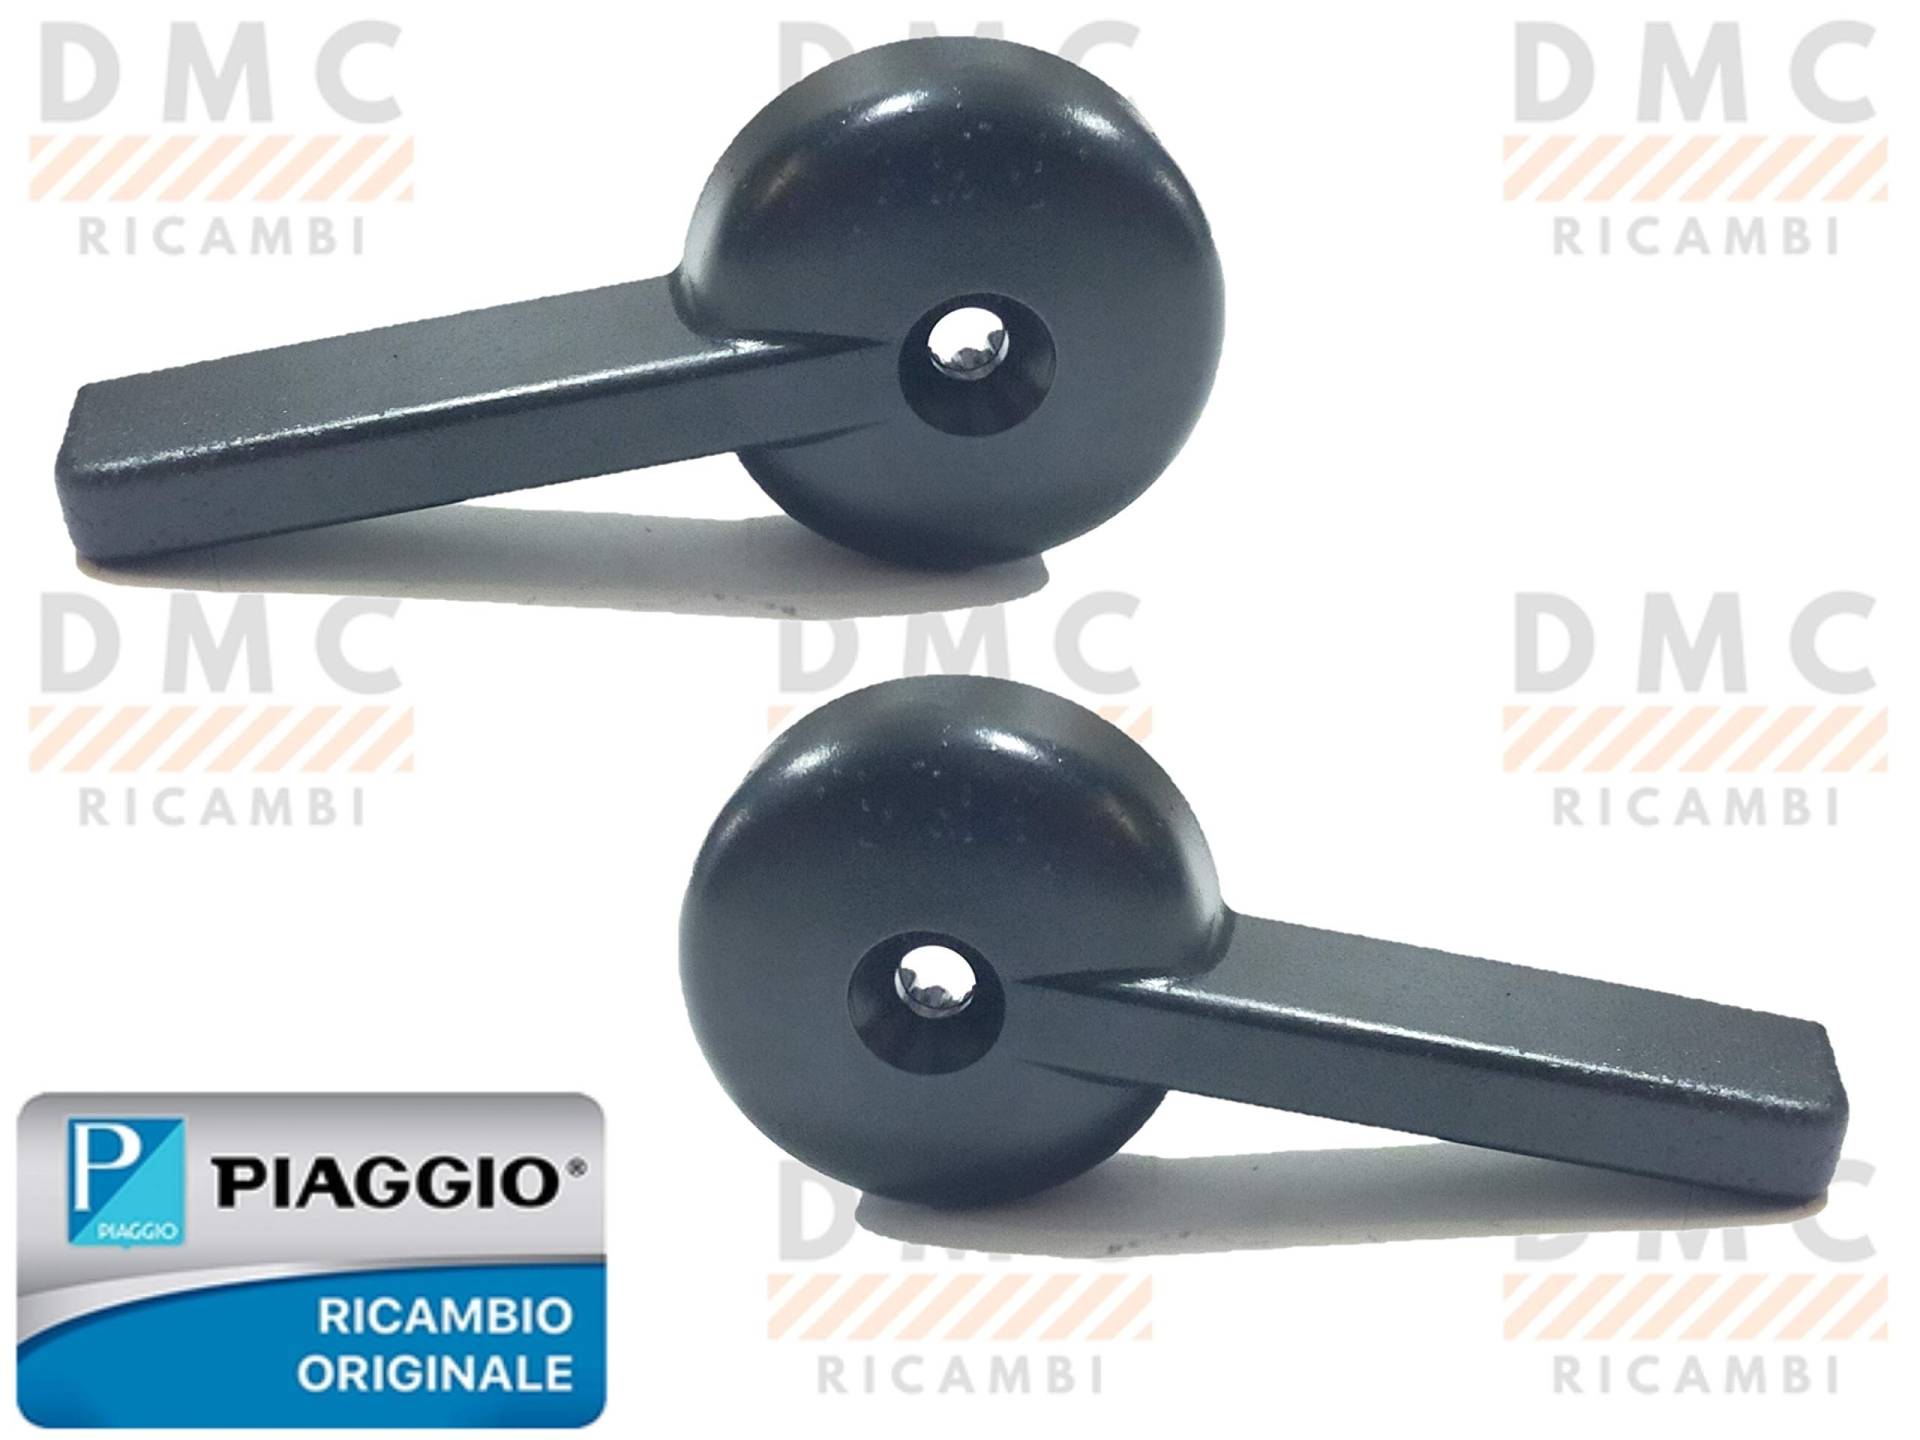 Türgriff Piaggio für Ape TM, 261449 von PIAGGIO